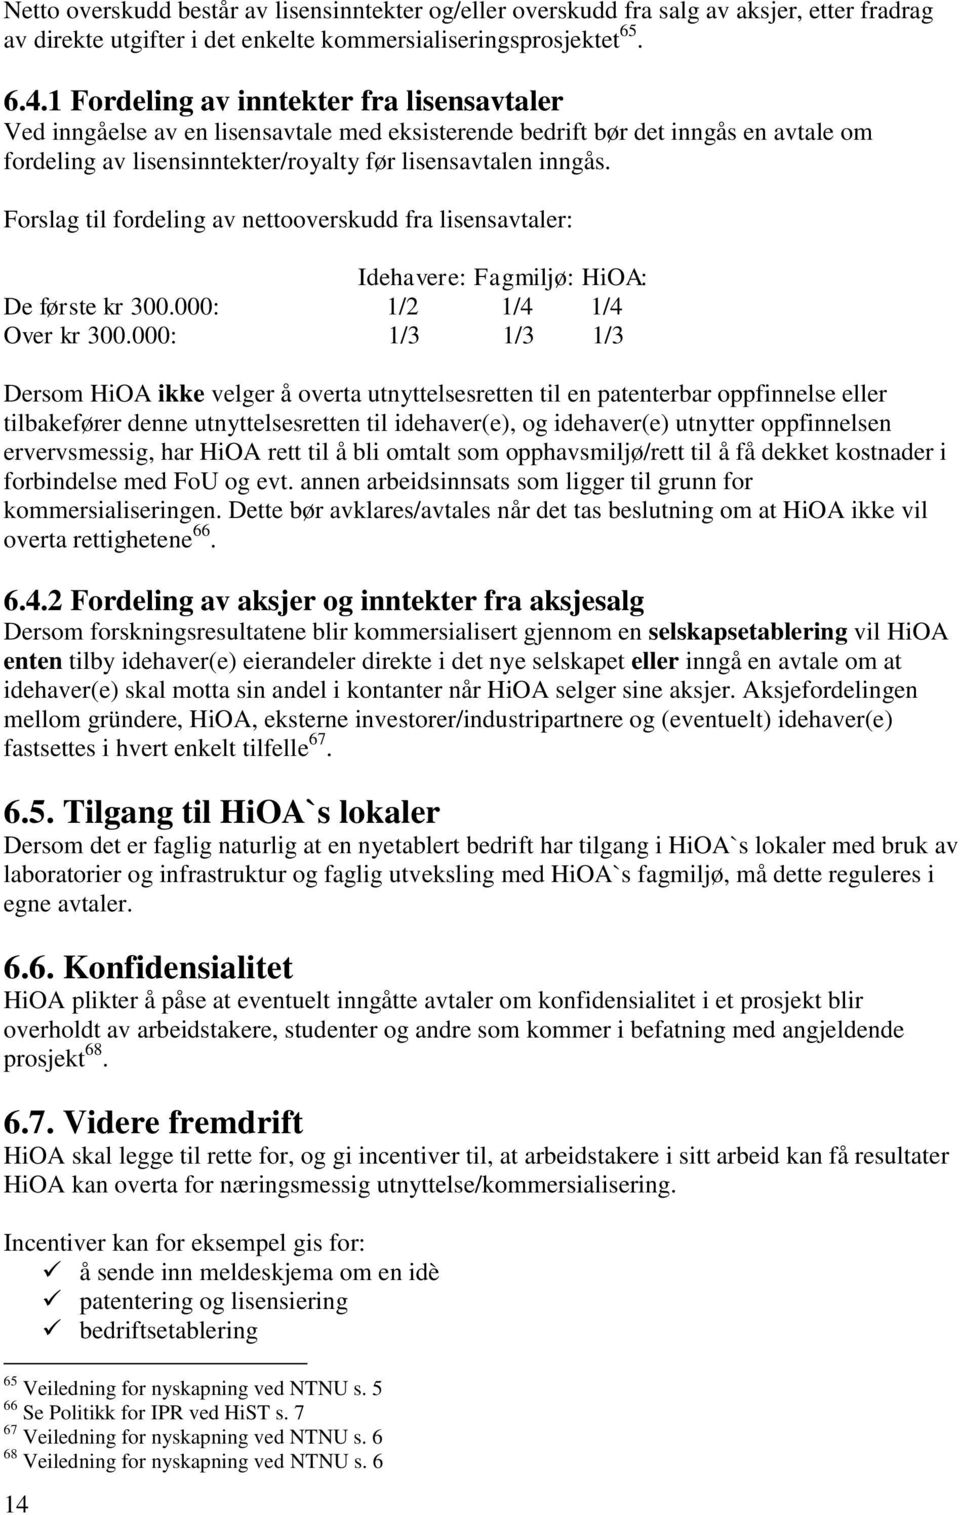 Forslag til fordeling av nettooverskudd fra lisensavtaler: Idehavere: Fagmiljø: HiOA: De første kr 300.000: 1/2 1/4 1/4 Over kr 300.